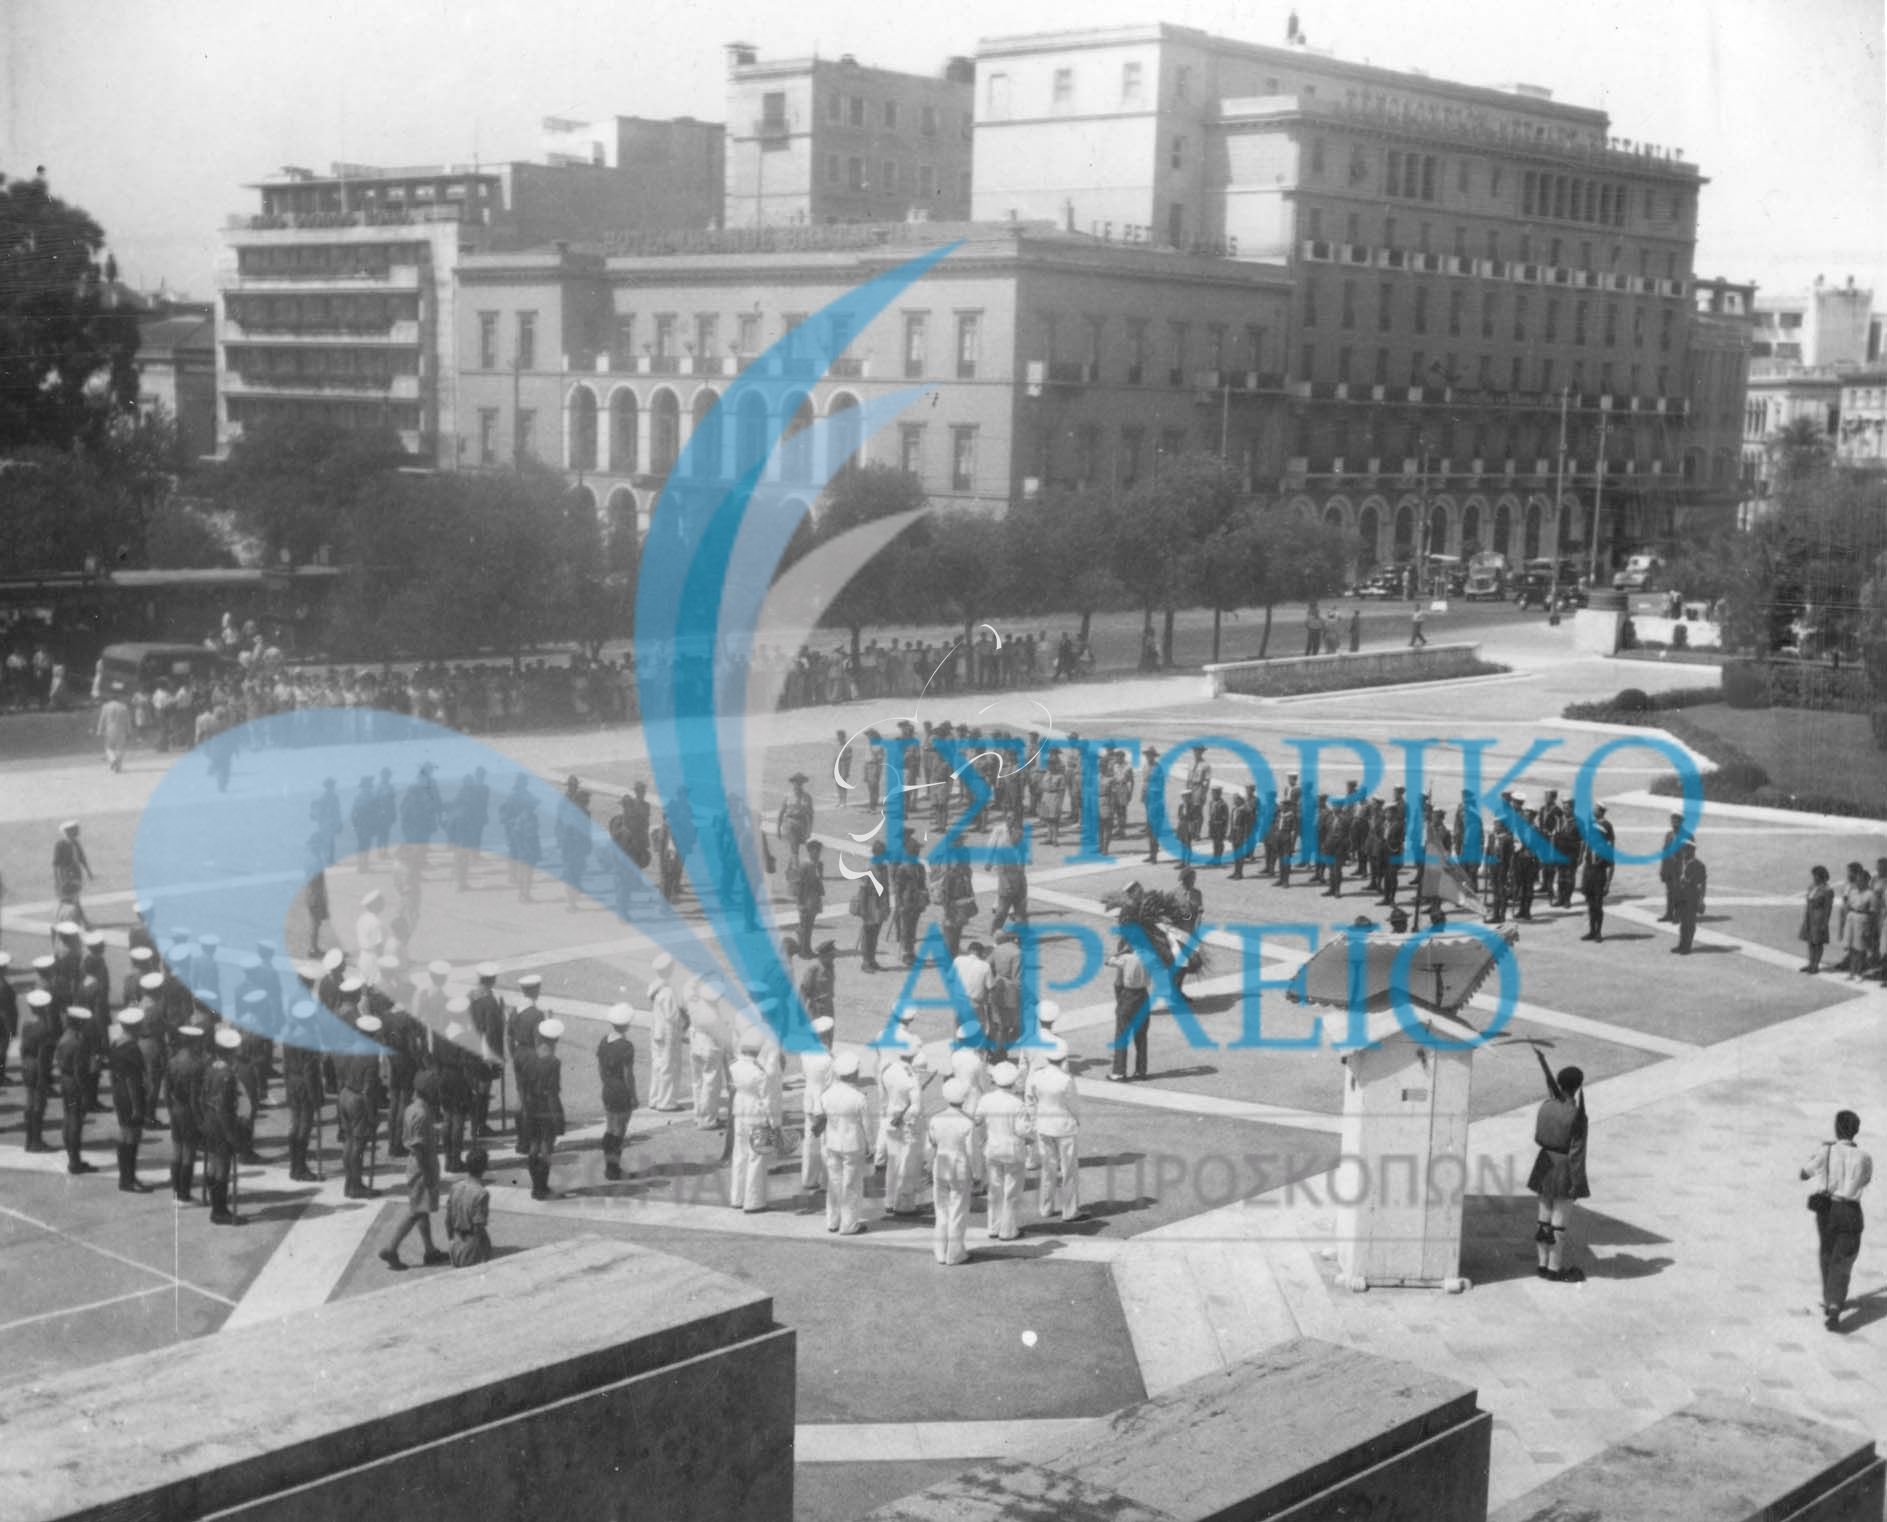 Υποδοχή στην Αθήνα της ελληνικής αντιπροσωπεία από το Τζάμπορη της Ειρήνης στην Γαλλία το 1947. Εδώ στιγμιότυπο από την κατάθεση Στεφάνου στο Μνημείο Αγνώστου Στρατιώτη.